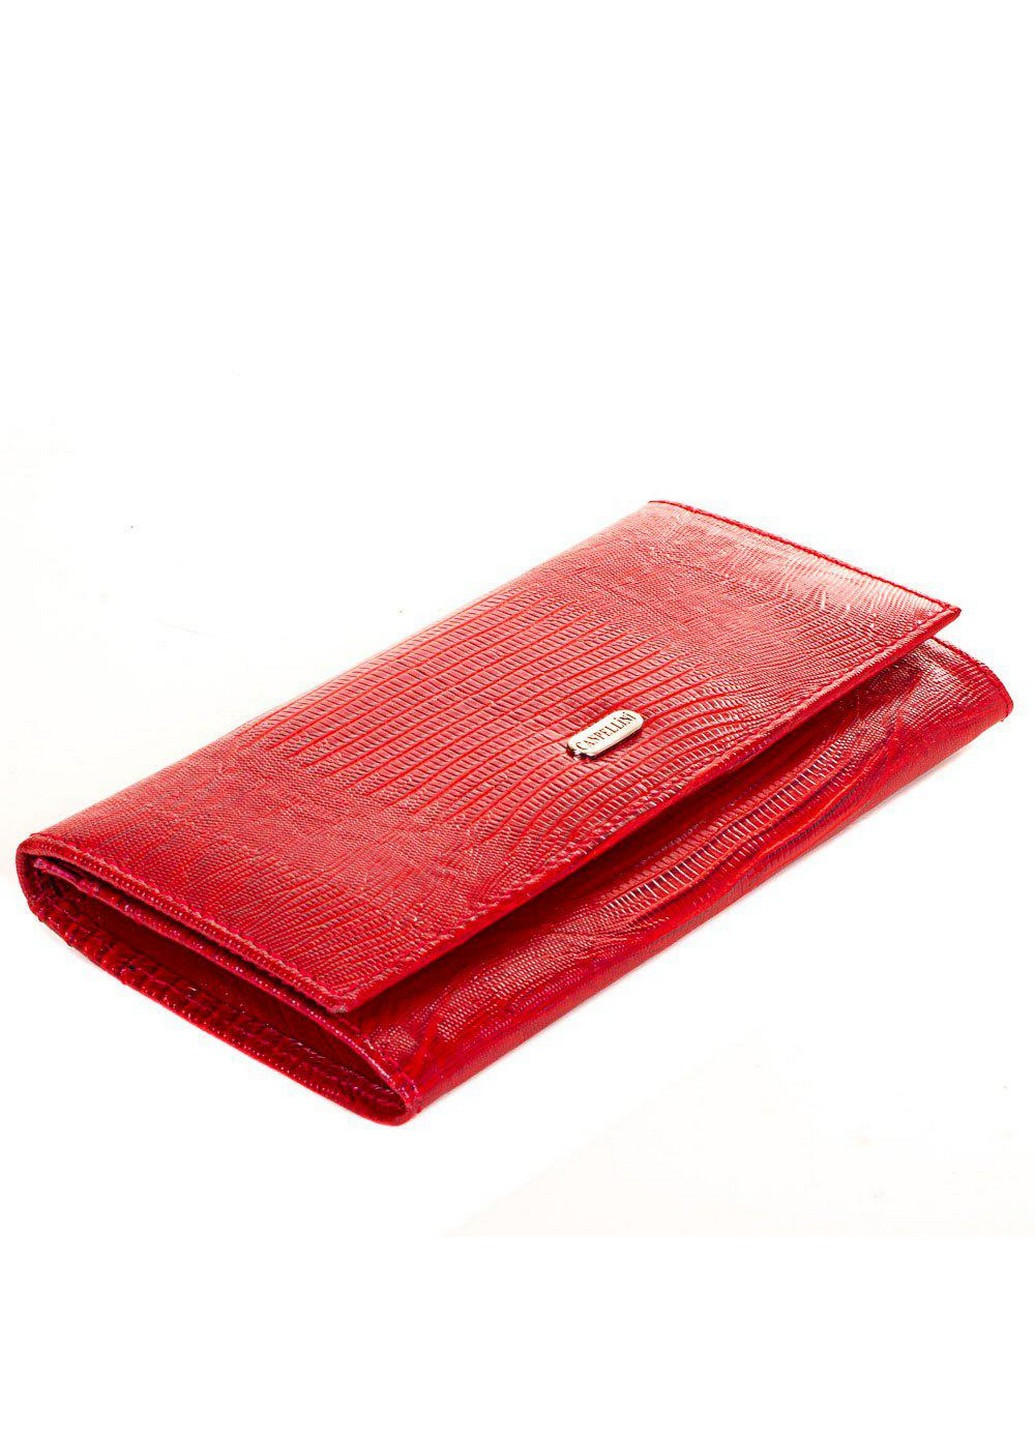 Жіночий шкіряний гаманець 17,5х9х2 см Canpellini (206211669)